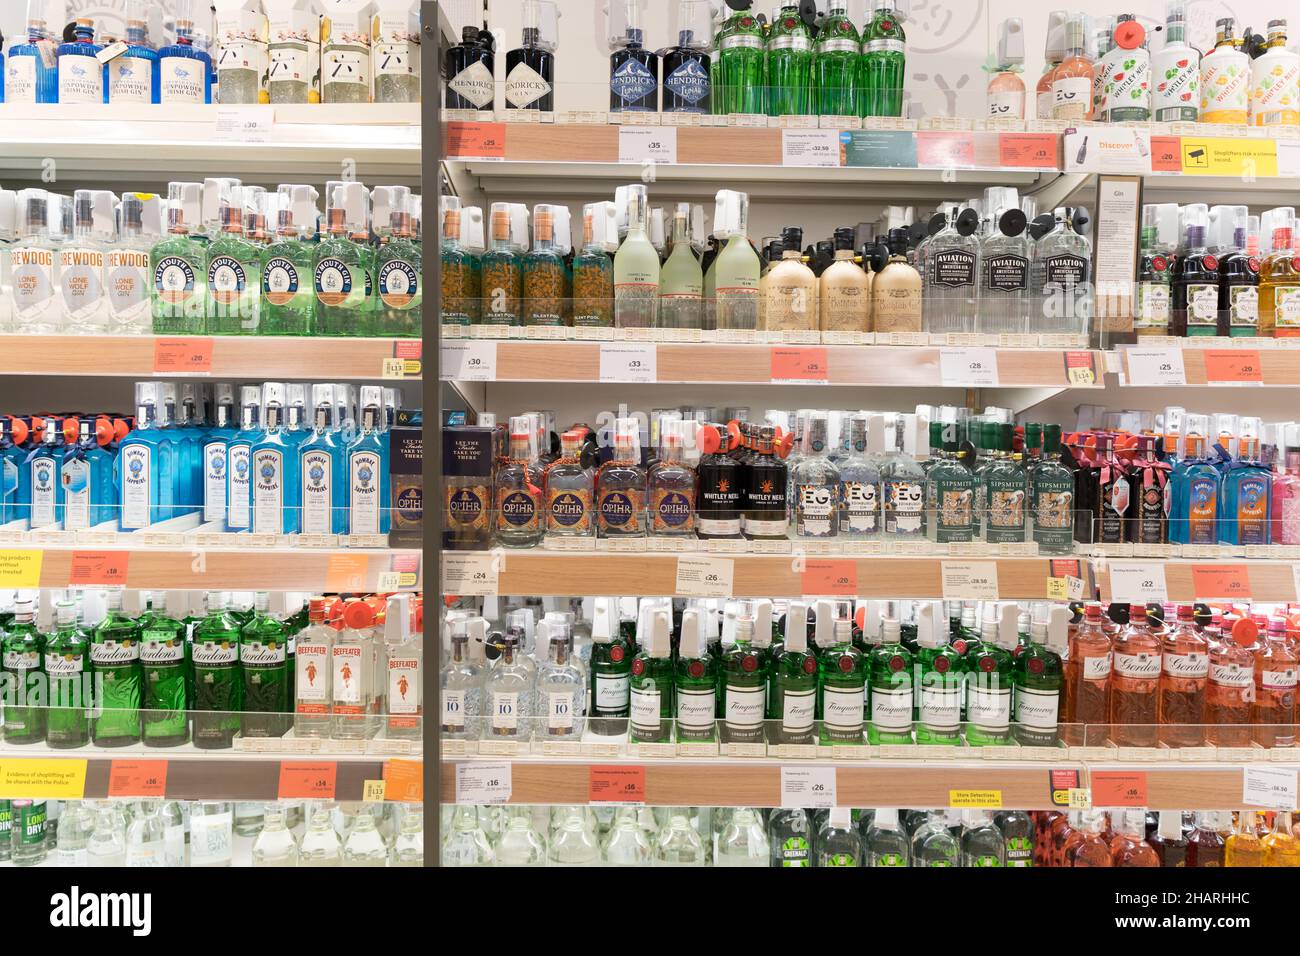 In einem Supermarkt in Kent UK werden vier Reihen Weißweine in den Regalen am Getränkegang ausgestellt Stockfoto